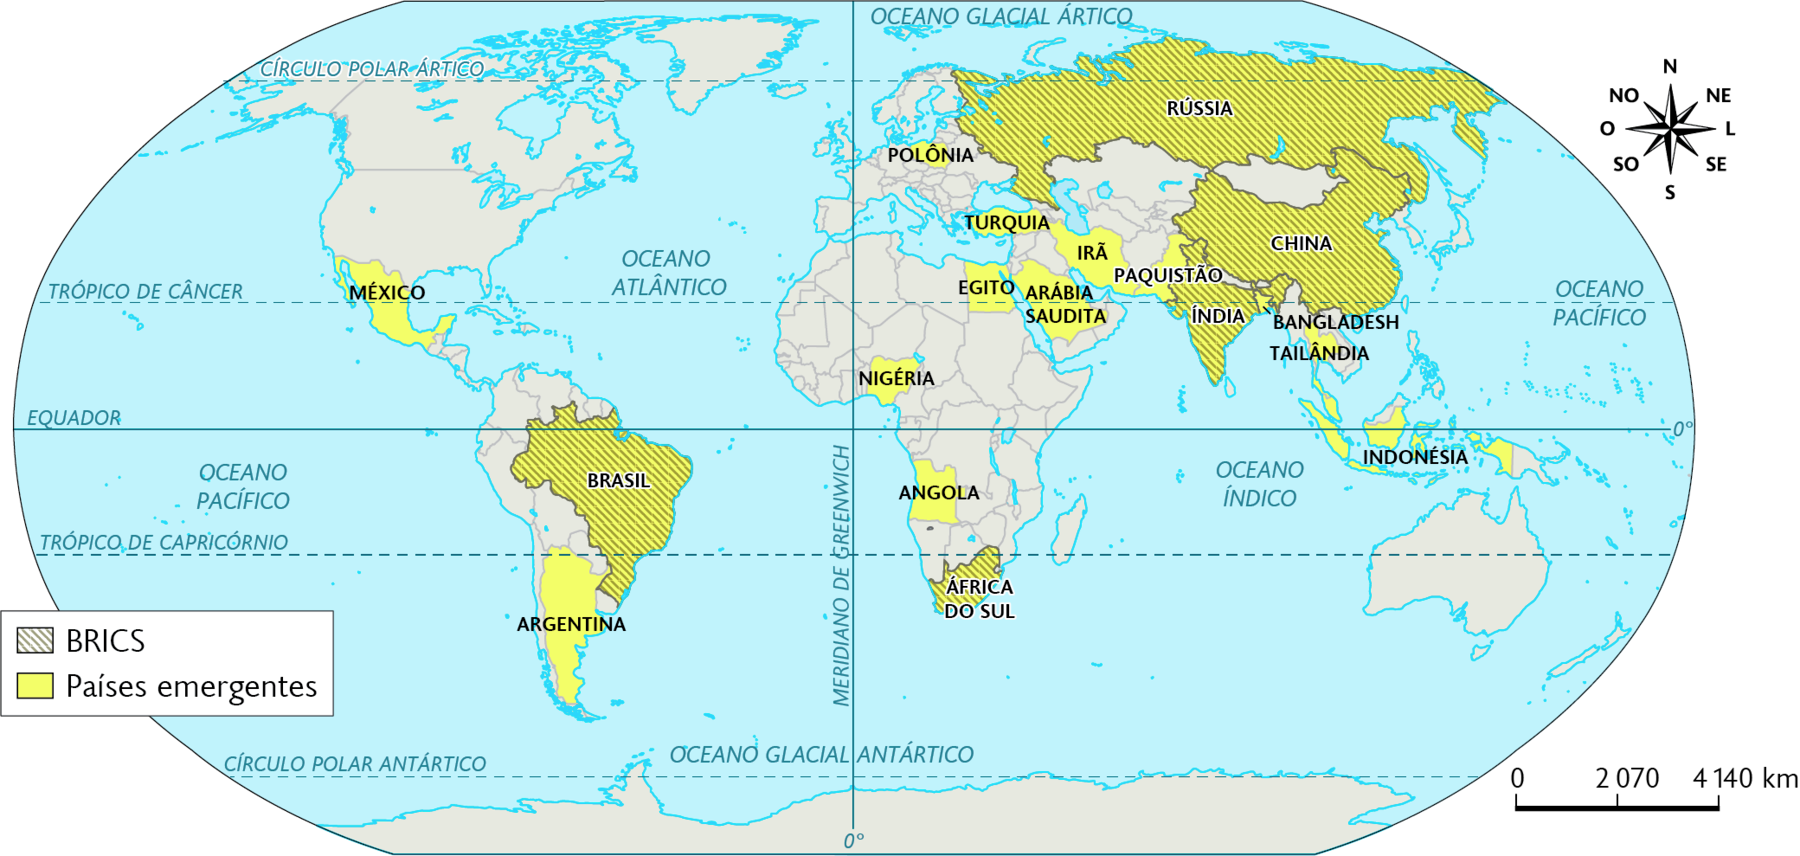 Mapa. Países com economias emergentes (2020). BRICS: Brasil, Rússia, Índia, China e África do Sul. Países emergentes: México, Argentina, Brasil, Polônia, Rússia, Turquia, Irã, Paquistão, Índia, China, Bangladesh, Tailândia, Indonésia, Arábia Saudita, Egito, Nigéria, Angola e África do Sul. No canto superior direito, a rosa dos ventos e na parte inferior, a escala: 2070 quilômetros por centímetro.